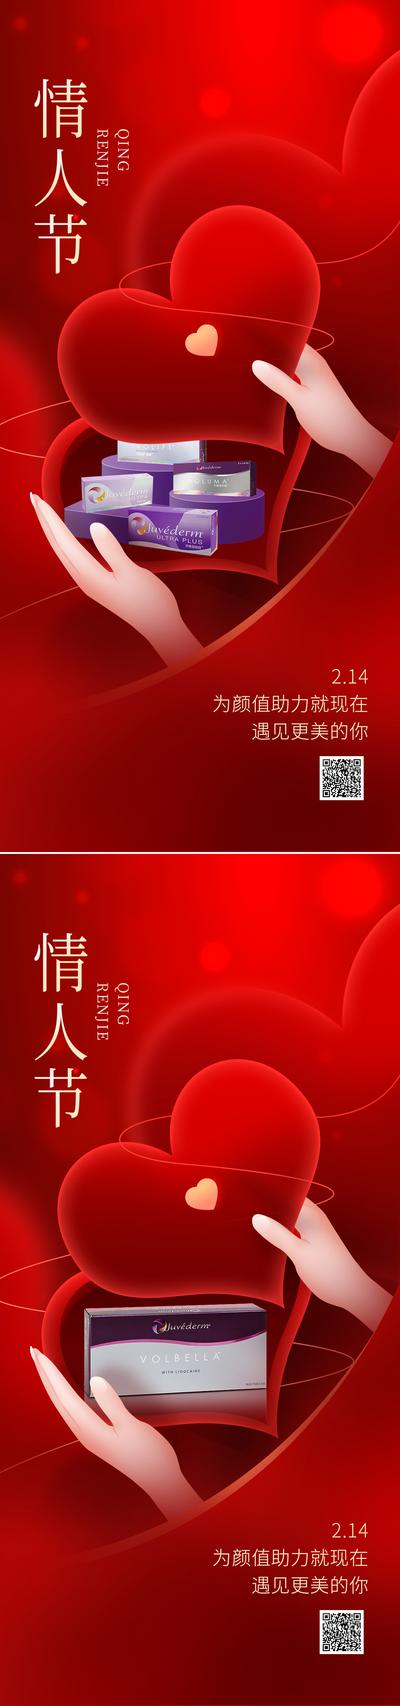 南门网 海报 公历节日 情人节 医美 产品 手 爱心 礼盒 红色 创意